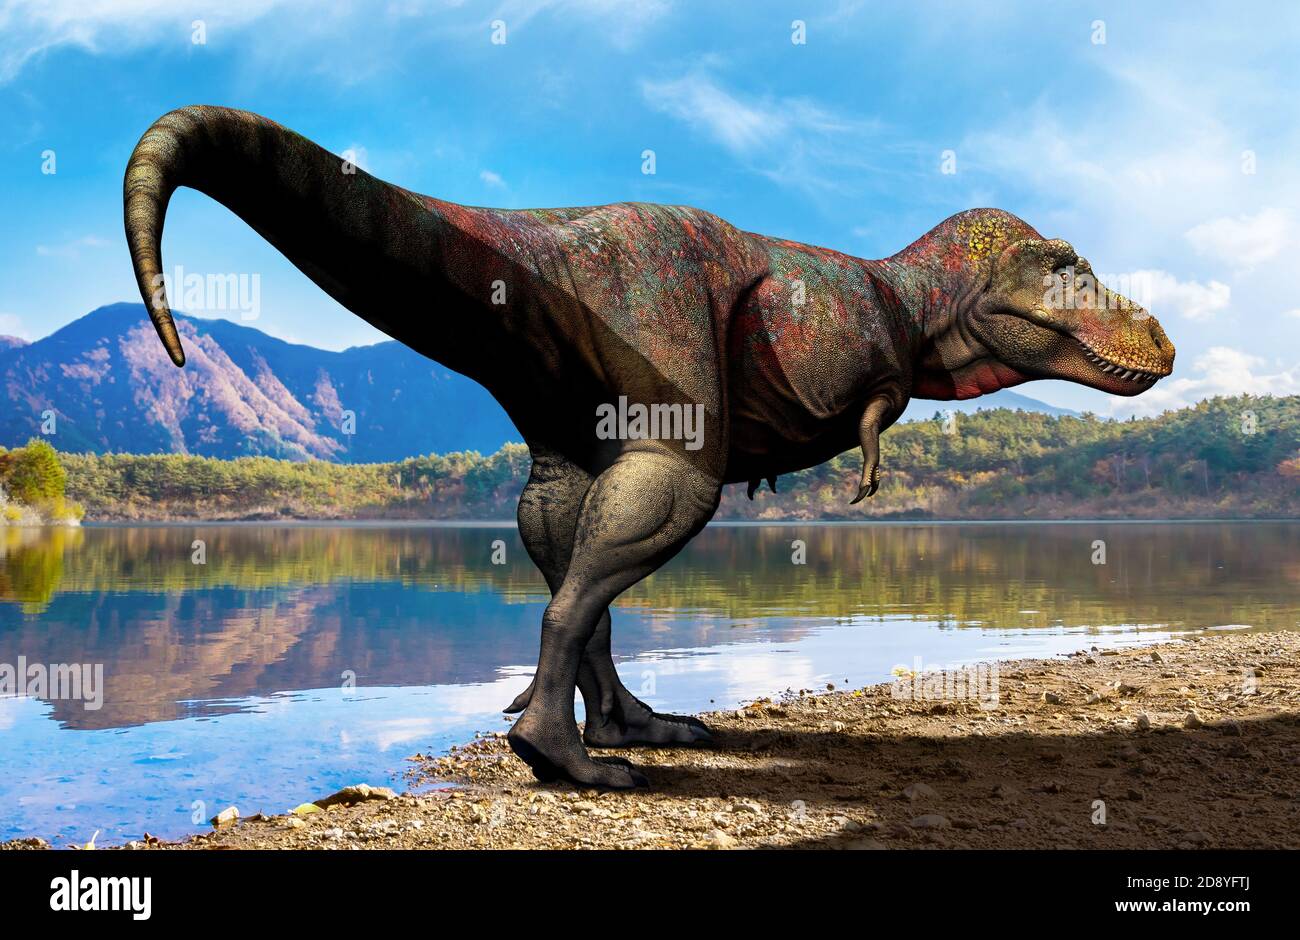 Zhuchengtirannus, un genere di dinosauro tirrannosauride del teropodo del tardo periodo Cretaceo della Cina. Foto Stock